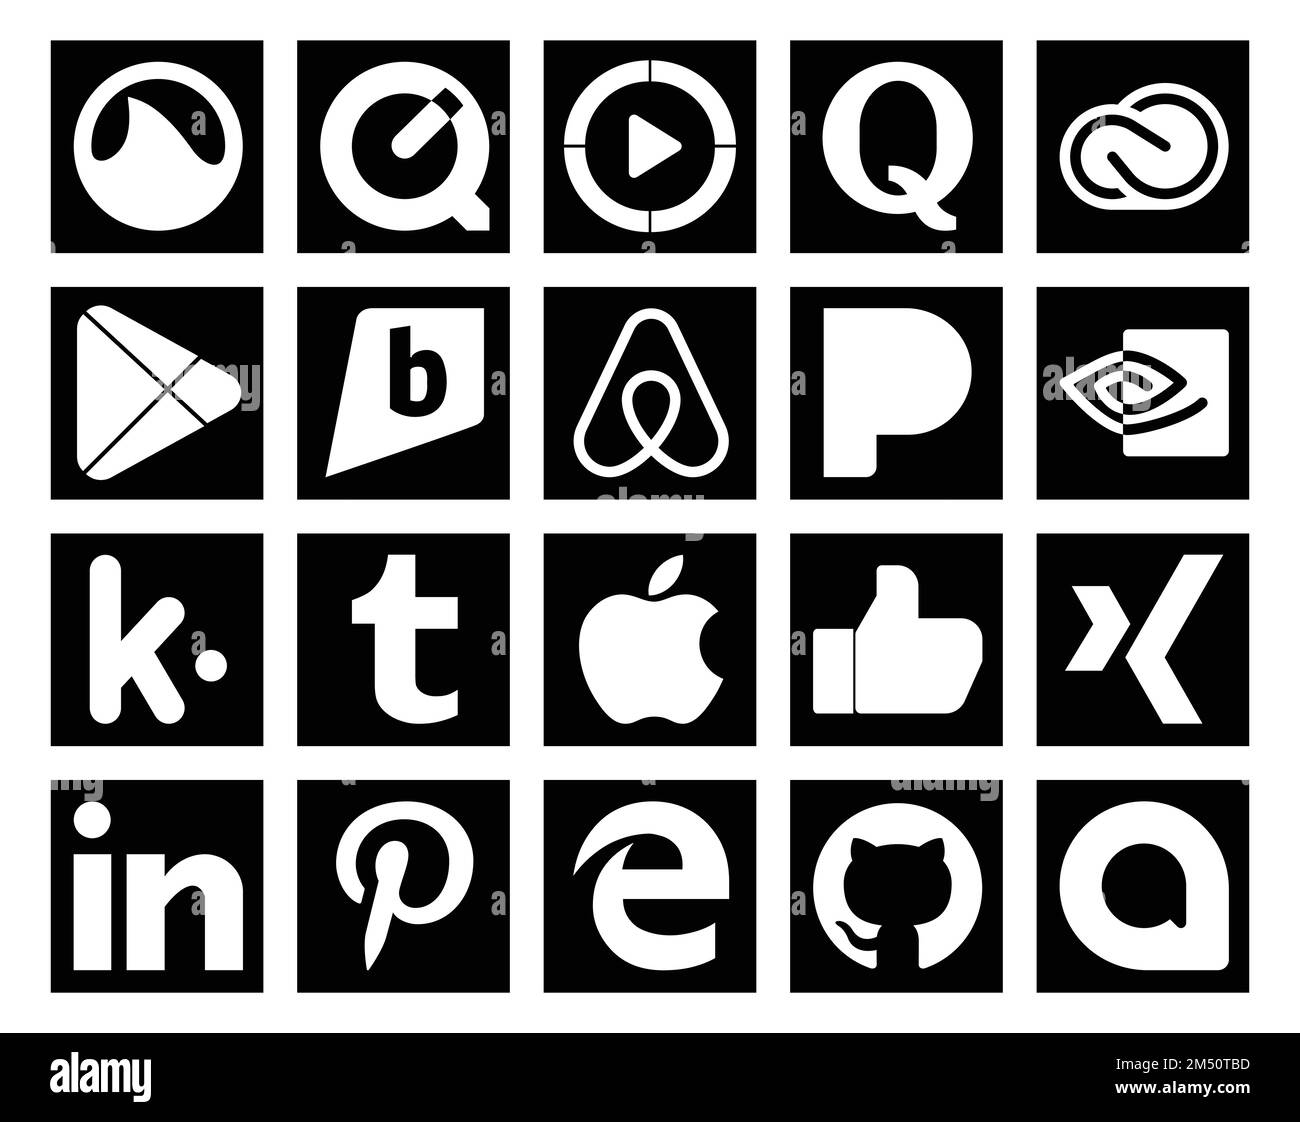 20 Social Media Icon Pack Including apple. kik. adobe. nvidia. air bnb Stock Vector